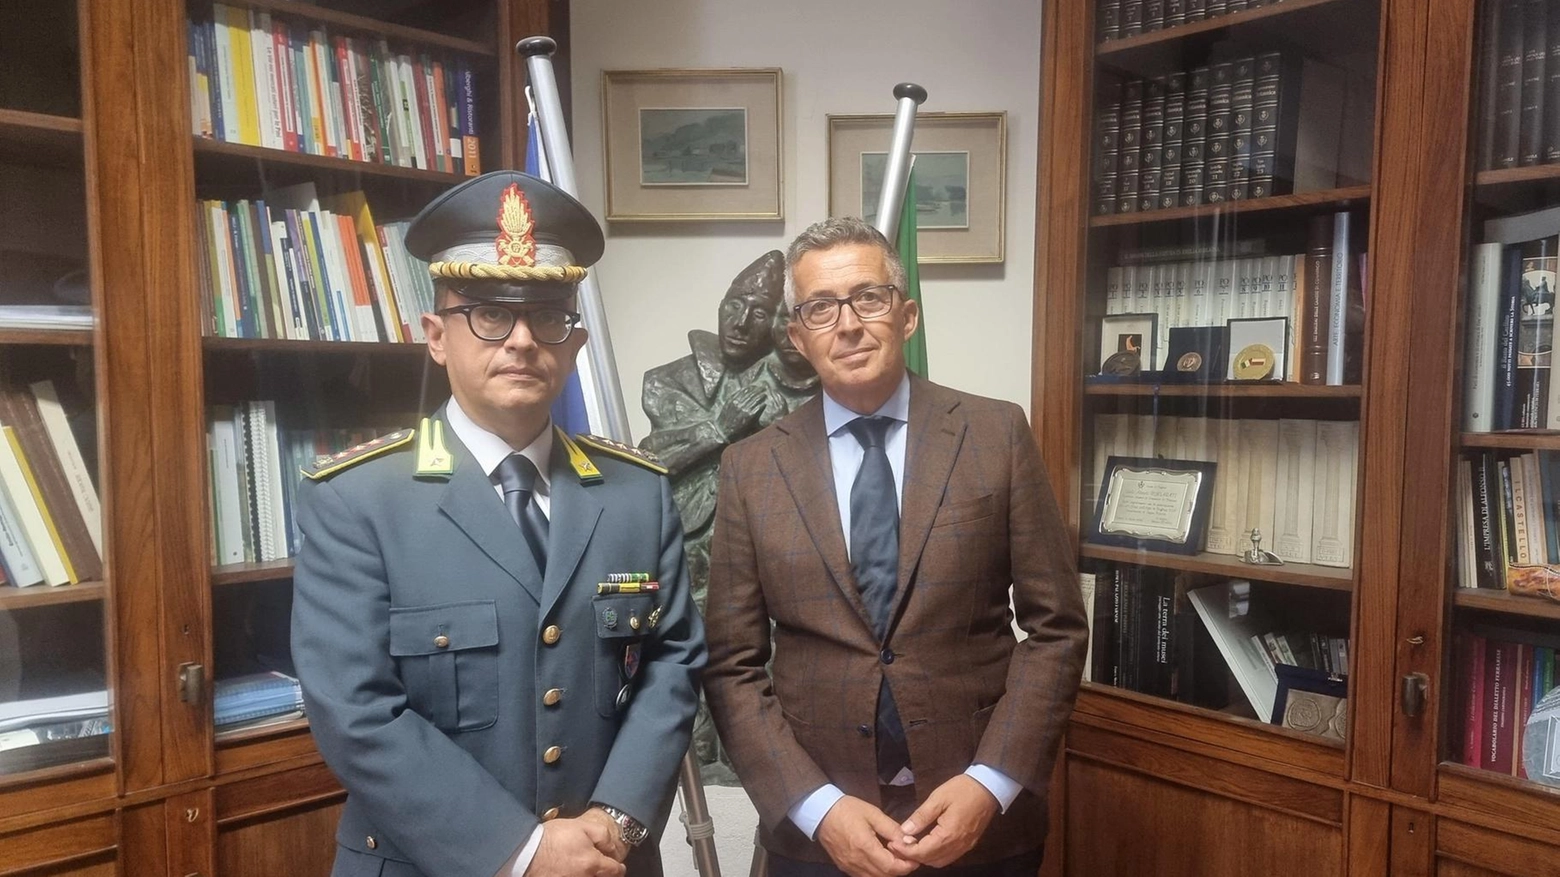 Finanza, il comandante incontra Paolo Govoni: "Stretta collaborazione"